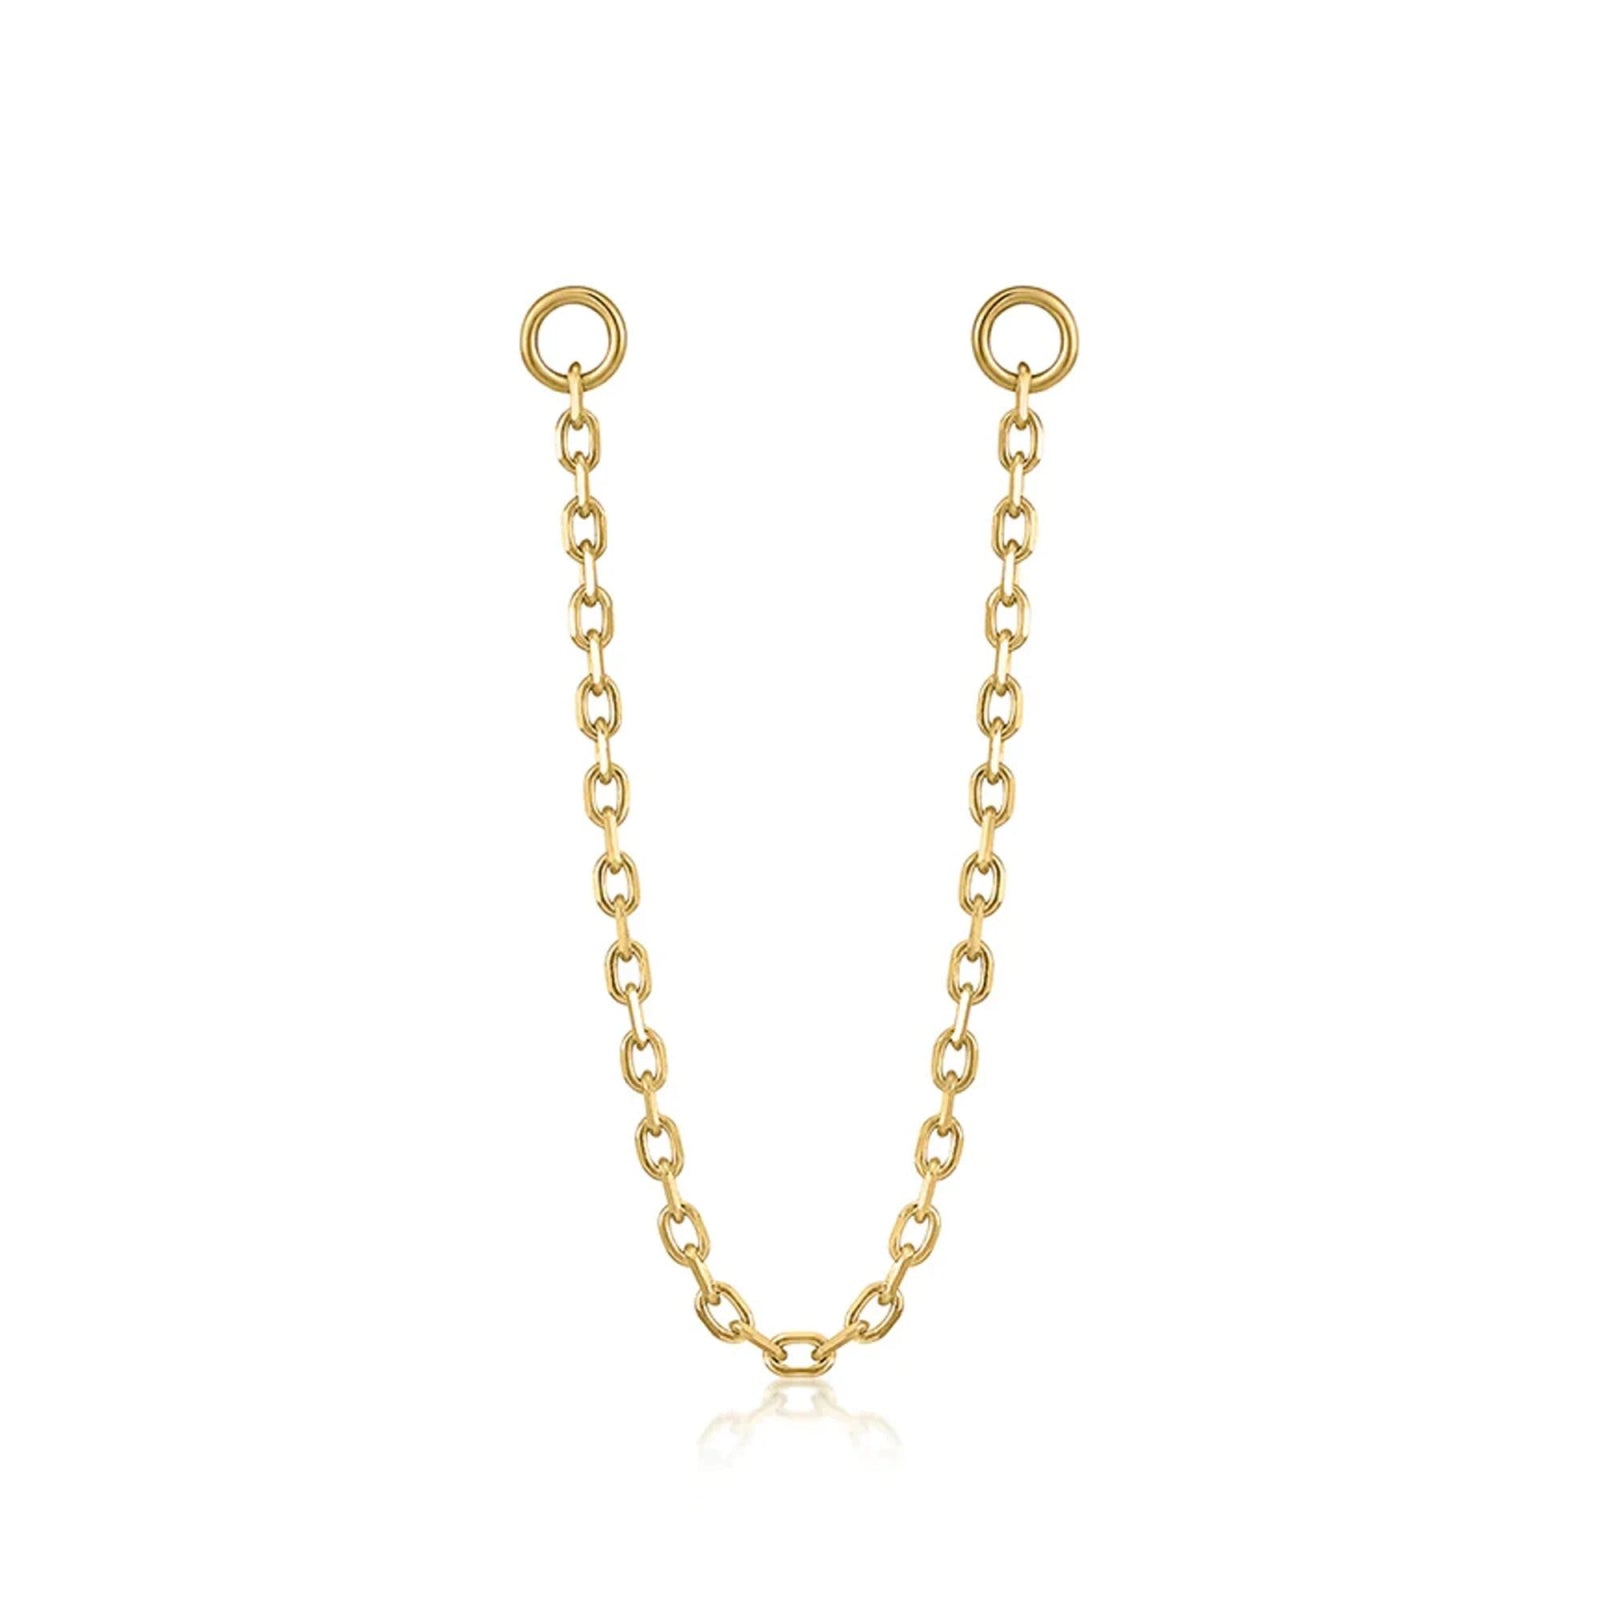 14k Earring Chain Earrings Ear Cuff Chain Helix Chain Earring Solid Gold Threader Earrings Earrings Estella Collection 18386 14k #tag4# #tag5# #tag6# #tag7# #tag8# #tag9# #tag10#